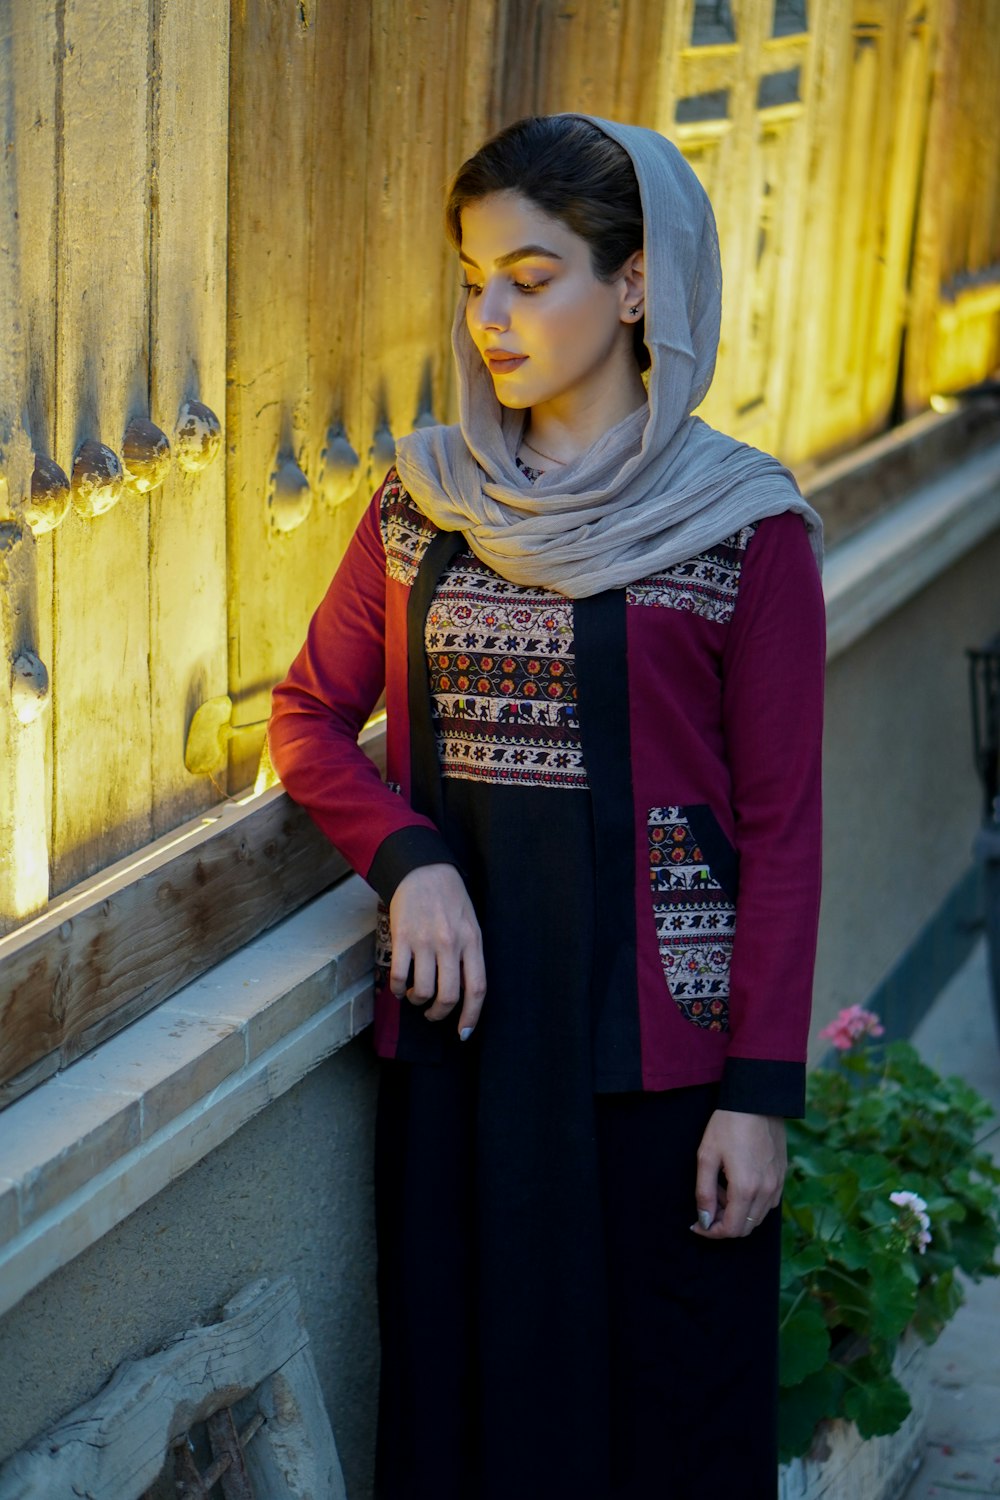 Femme en robe rouge à manches longues portant un hijab marron debout à côté d’une porte en bois jaune pendant la journée